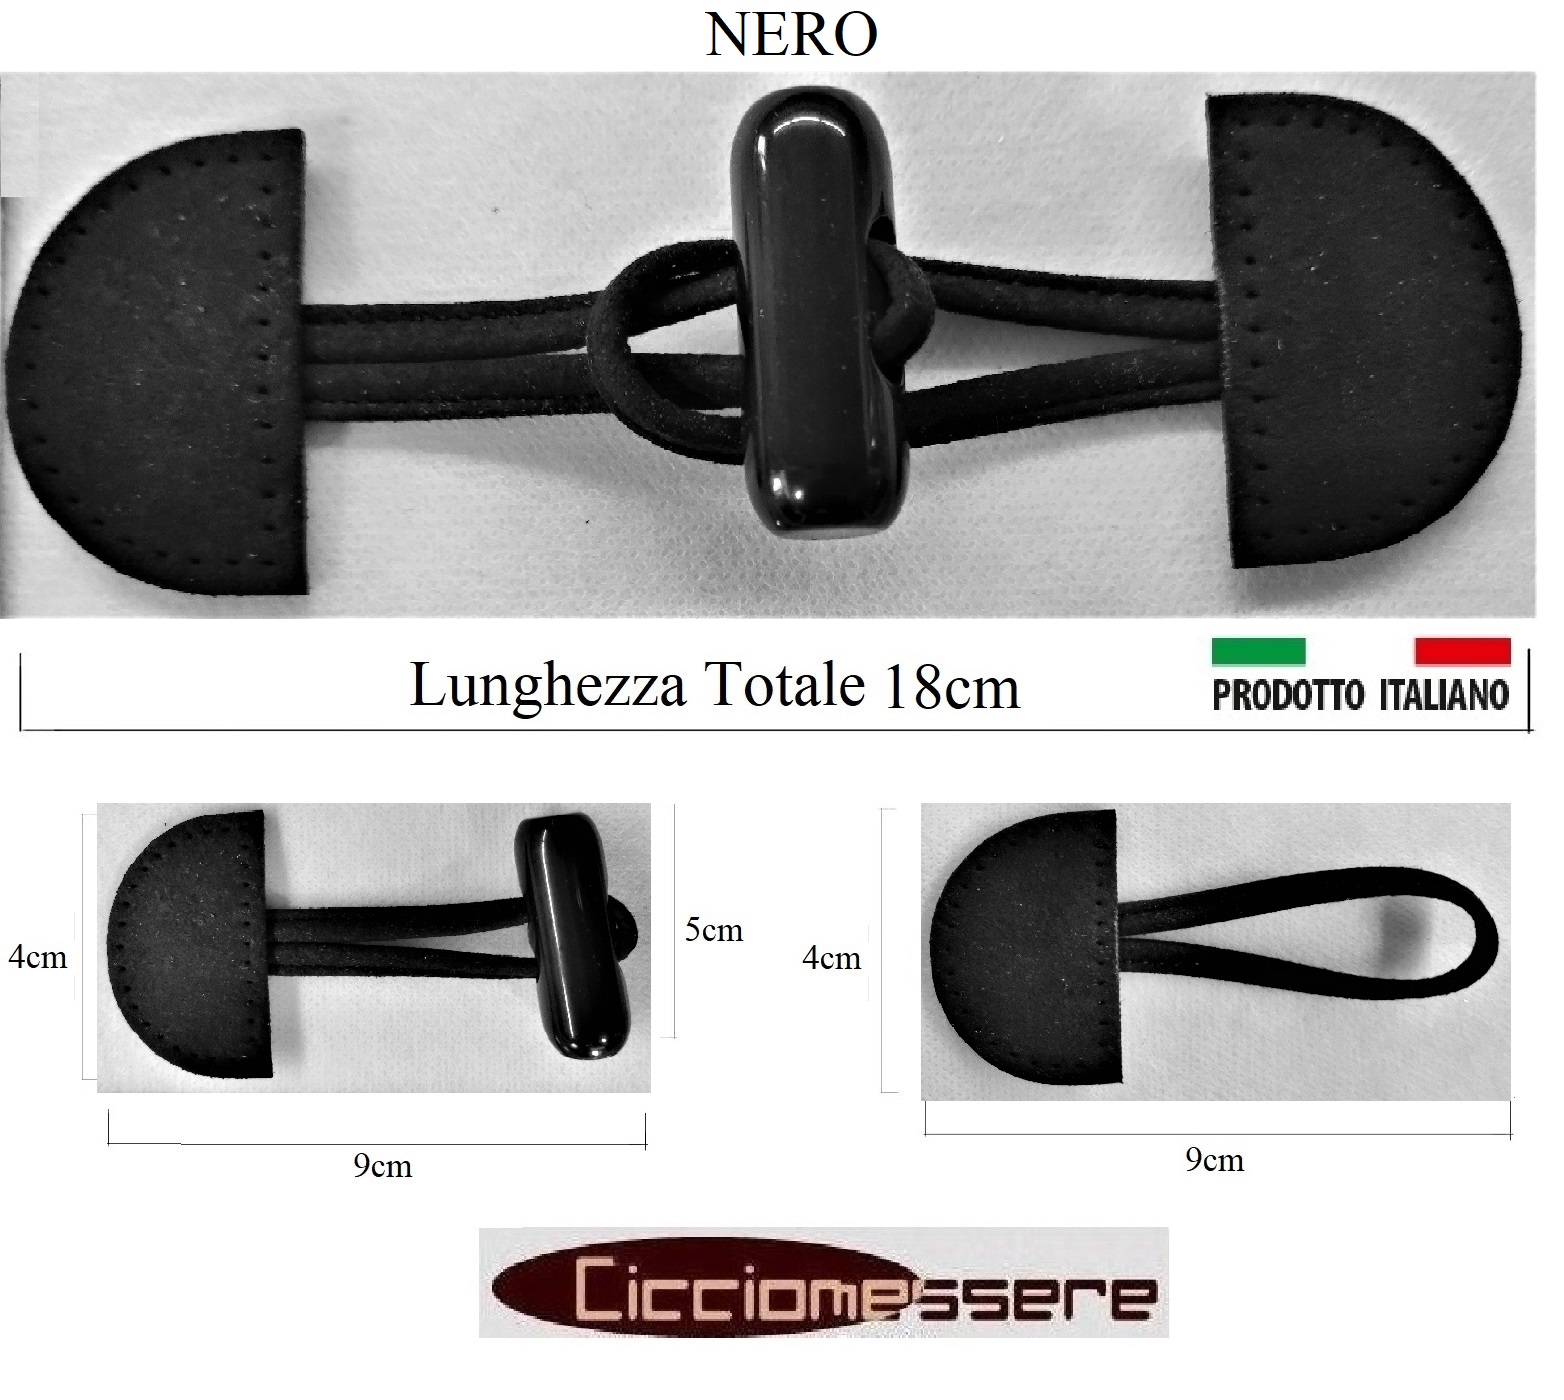 Copriabiti/Capi Appesi MY 40 (NEUTRI), Ingrosso forniture merceria Firenze  accessori tessili sartorie camicie confezioni etichette bottoni